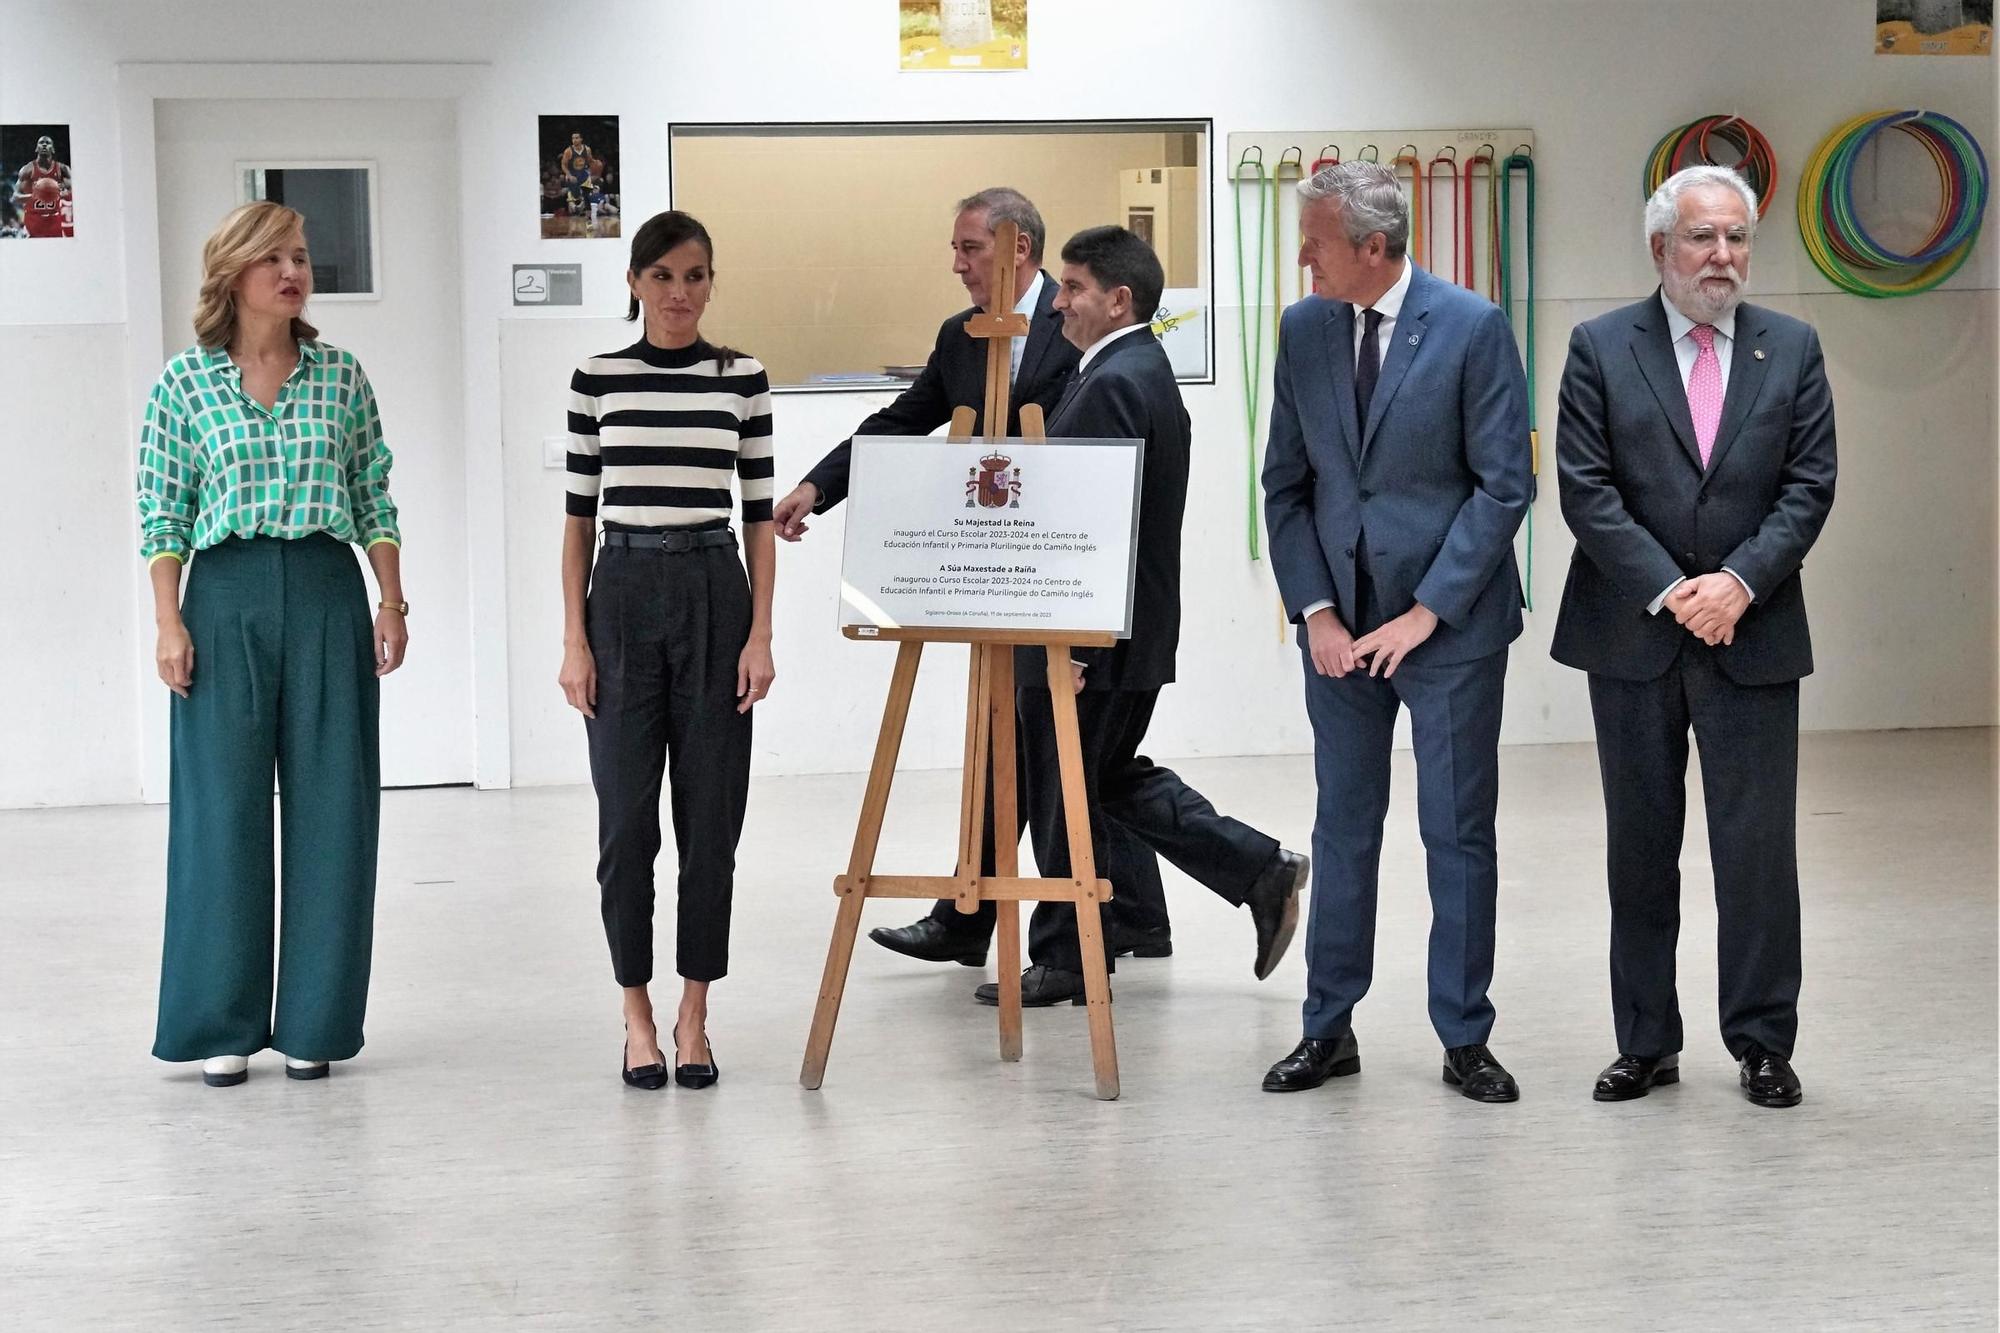 La reina Letizia inaugura el curso escolar en Oroso